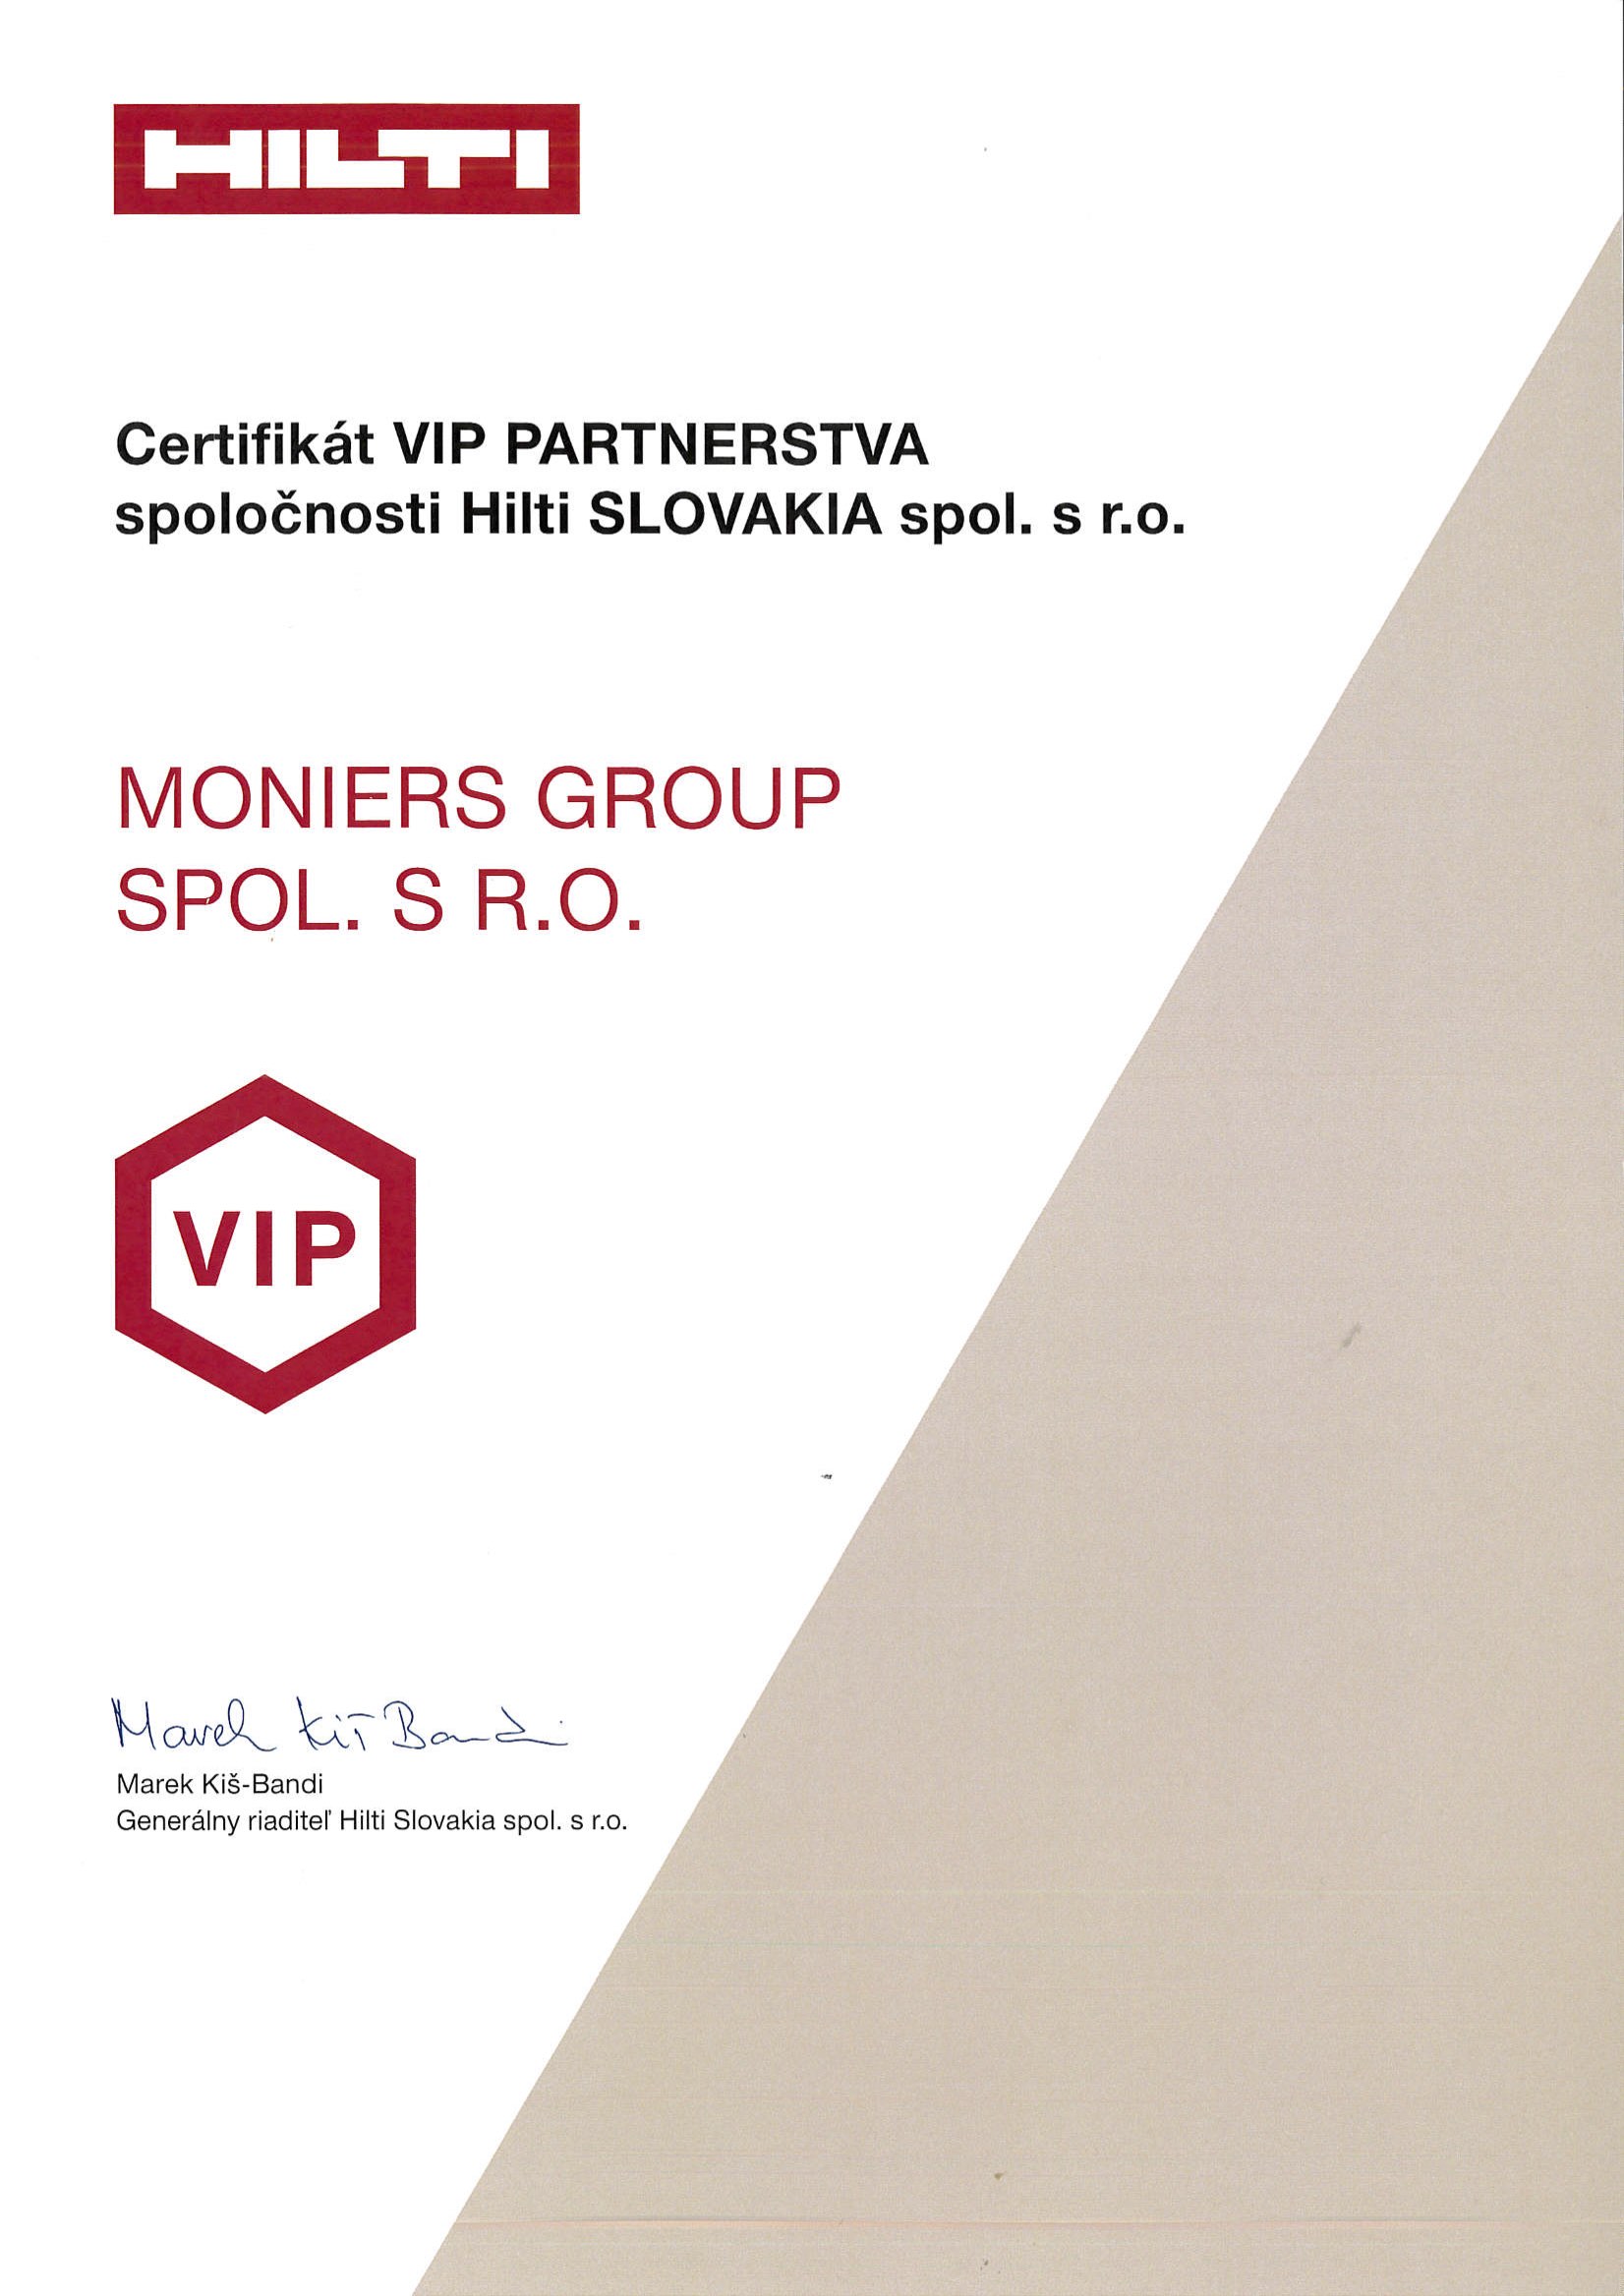 Certificate HILTI VIP PARTNER